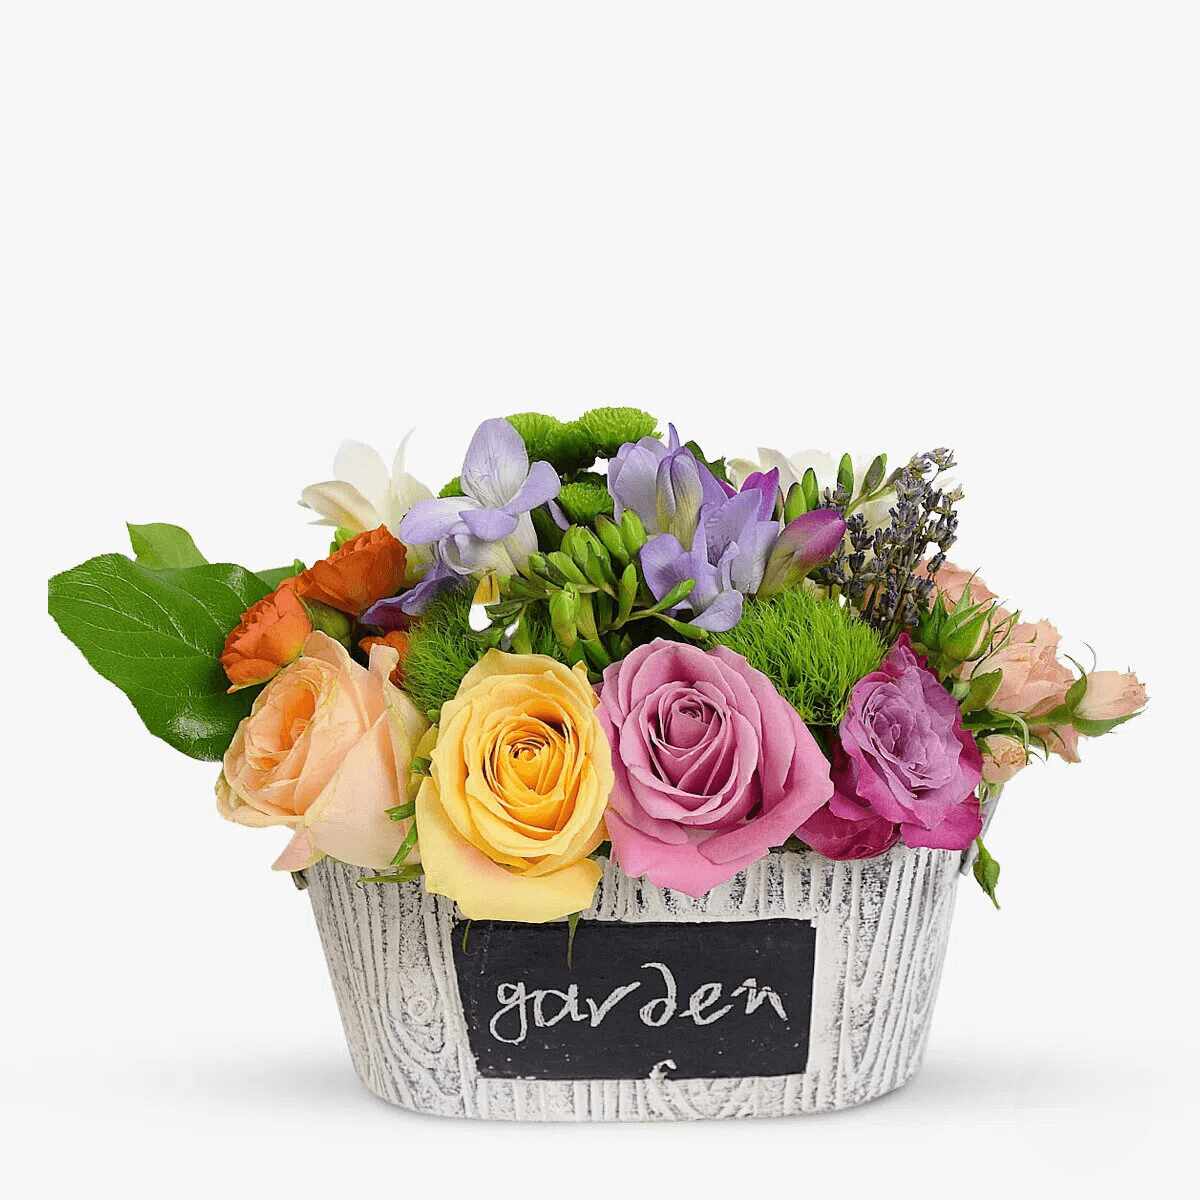 Aranjament floral - Cadouri Florale - Standard